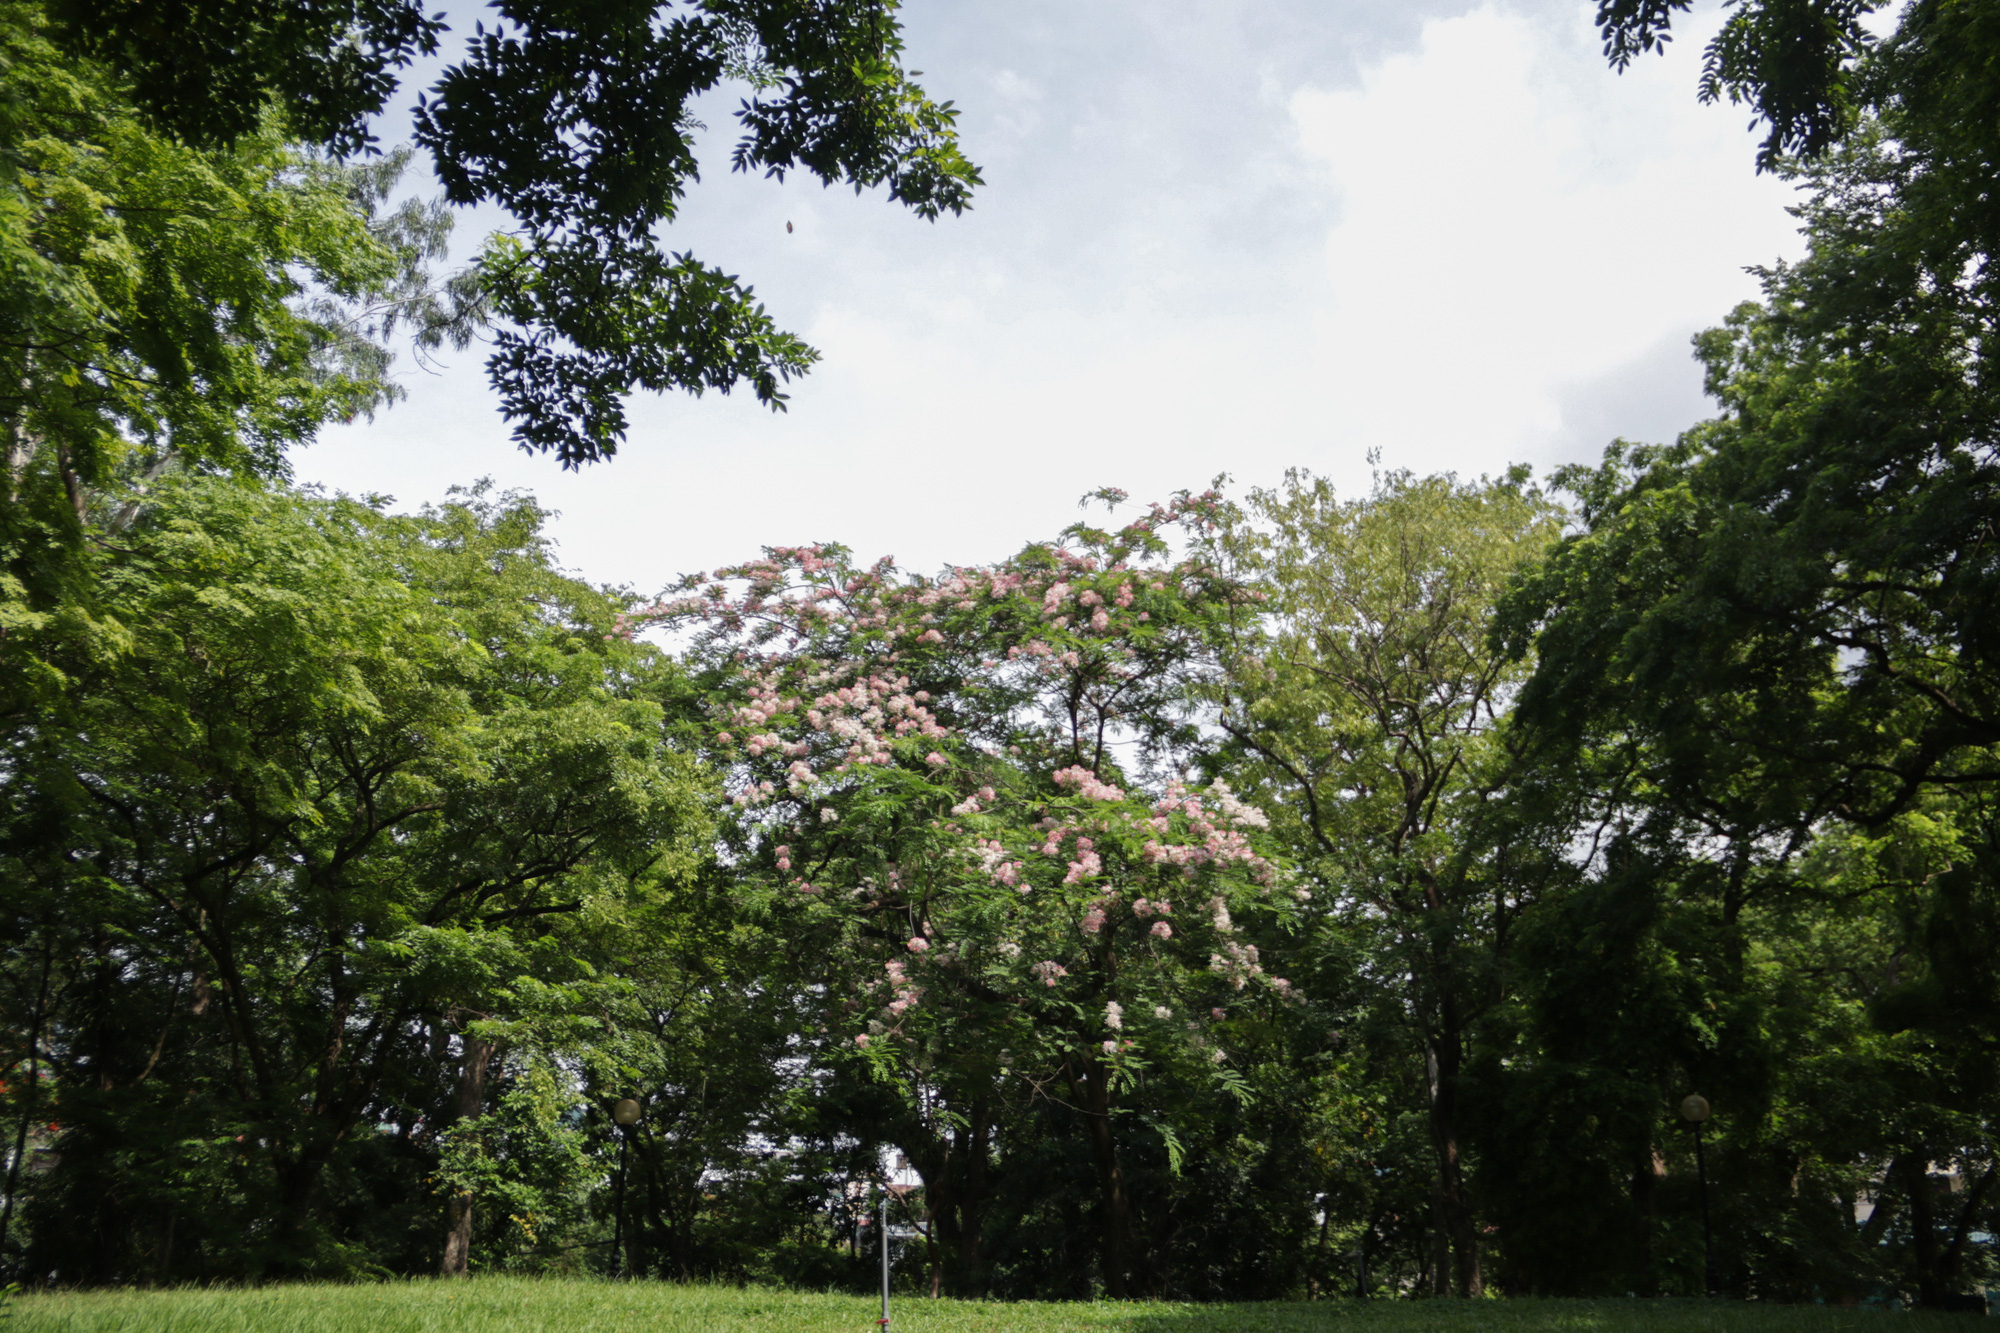 Mãn nhãn muồng hoa đào bung nở đẹp mê hồn ở Hà Nội - Ảnh 1.